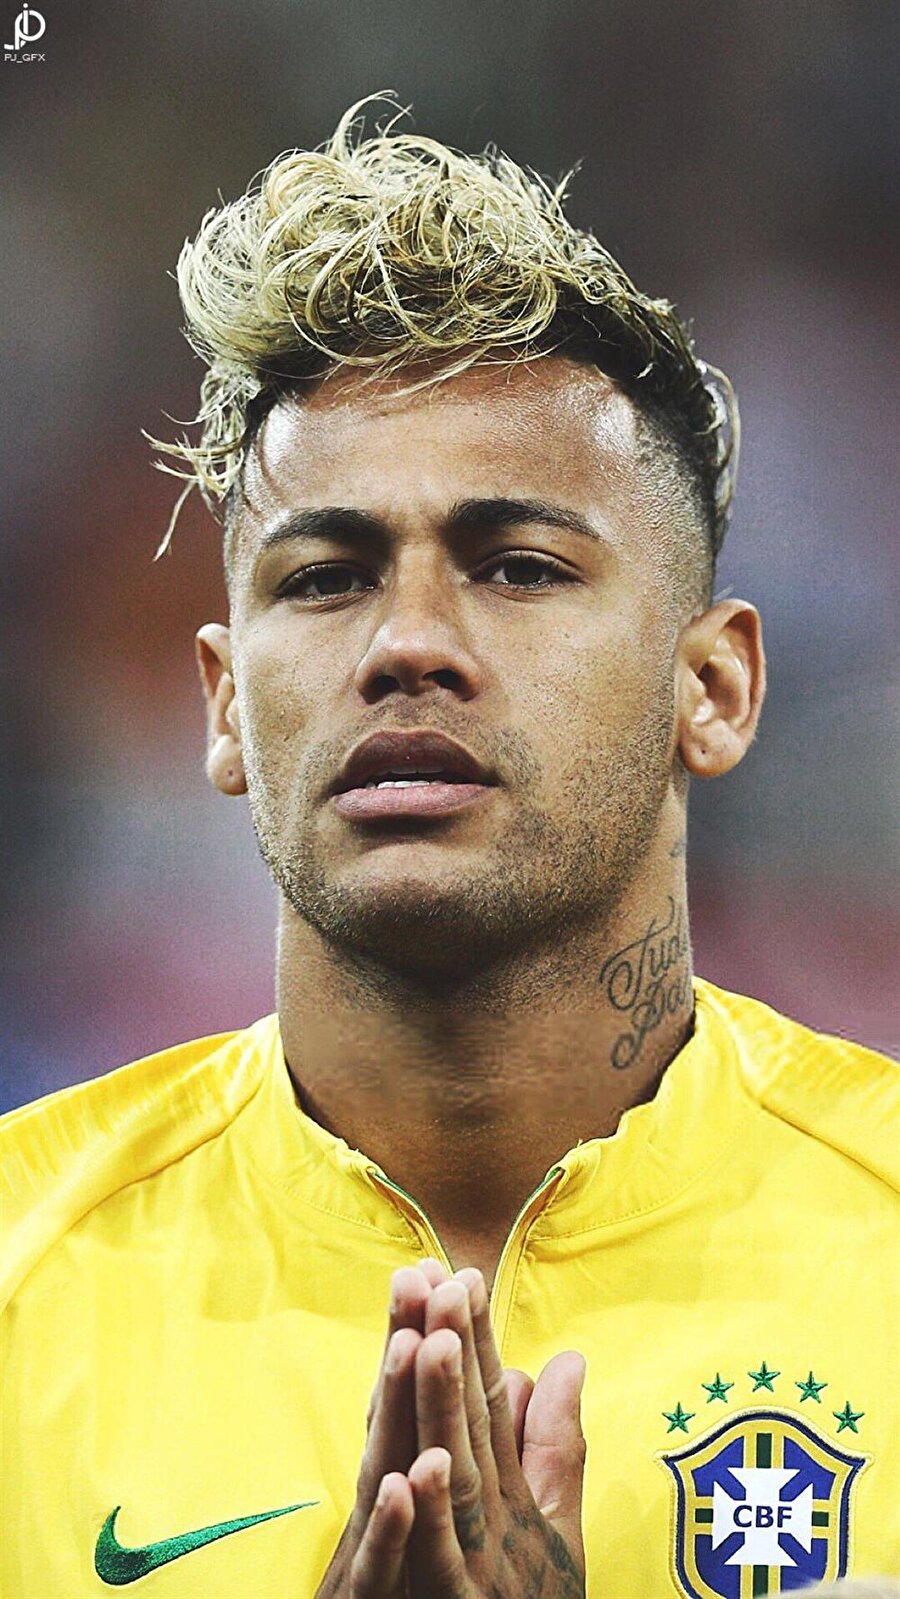 7-En Süslü Futbolcu: Neymar
Brezilyalı futbolcu, şüphesiz bu turnuvanın her yönüyle en çok konuşulan isimlerinden biri oldu. Spagettiye benzetilen saçları da dahil...